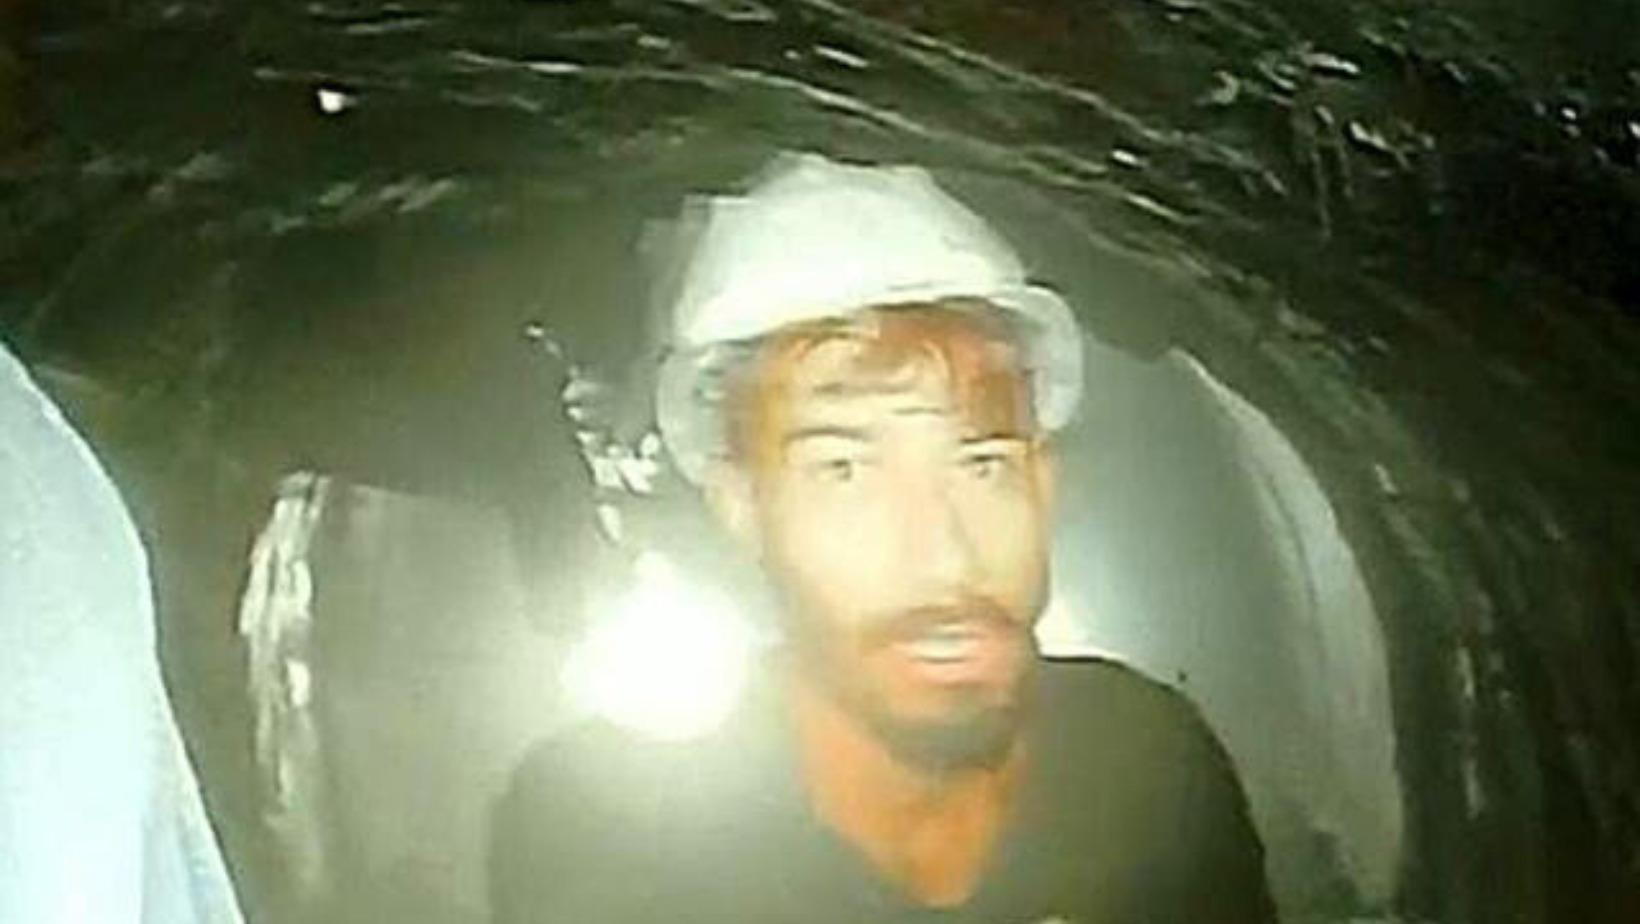 Obreros atrapados desde hace diez días en un túnel en construcción en la India. Foto: fuente externa.